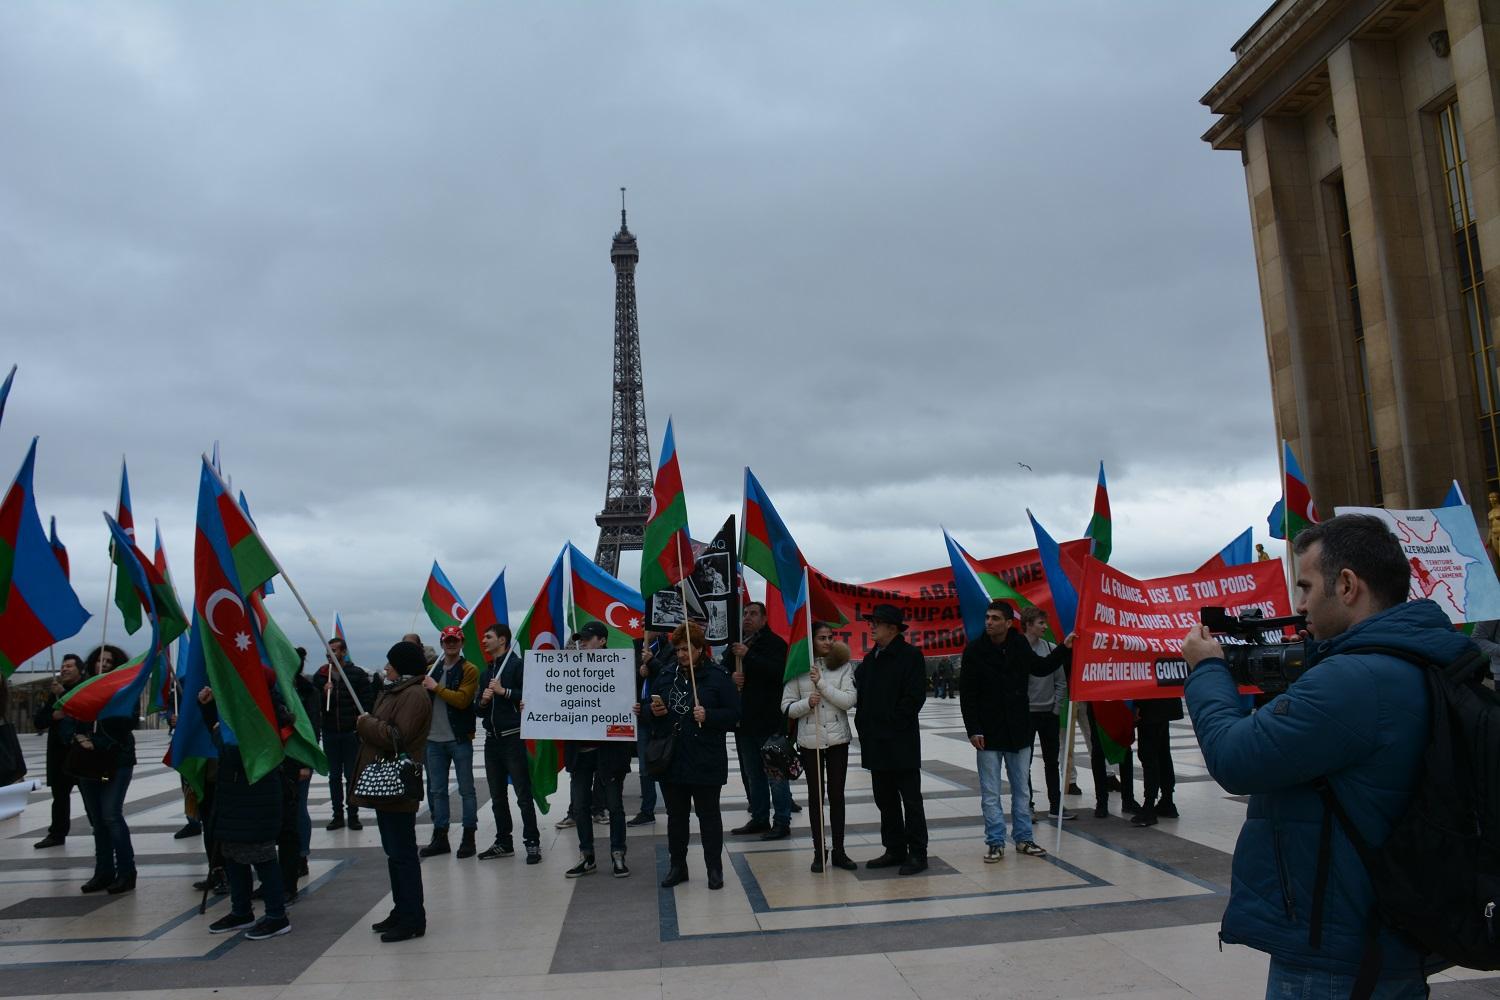 Parisdə yaşayan azərbaycanlılar: Fransada Sarkisyan kimi qatillərə yer olmamalıdır (FOTO)